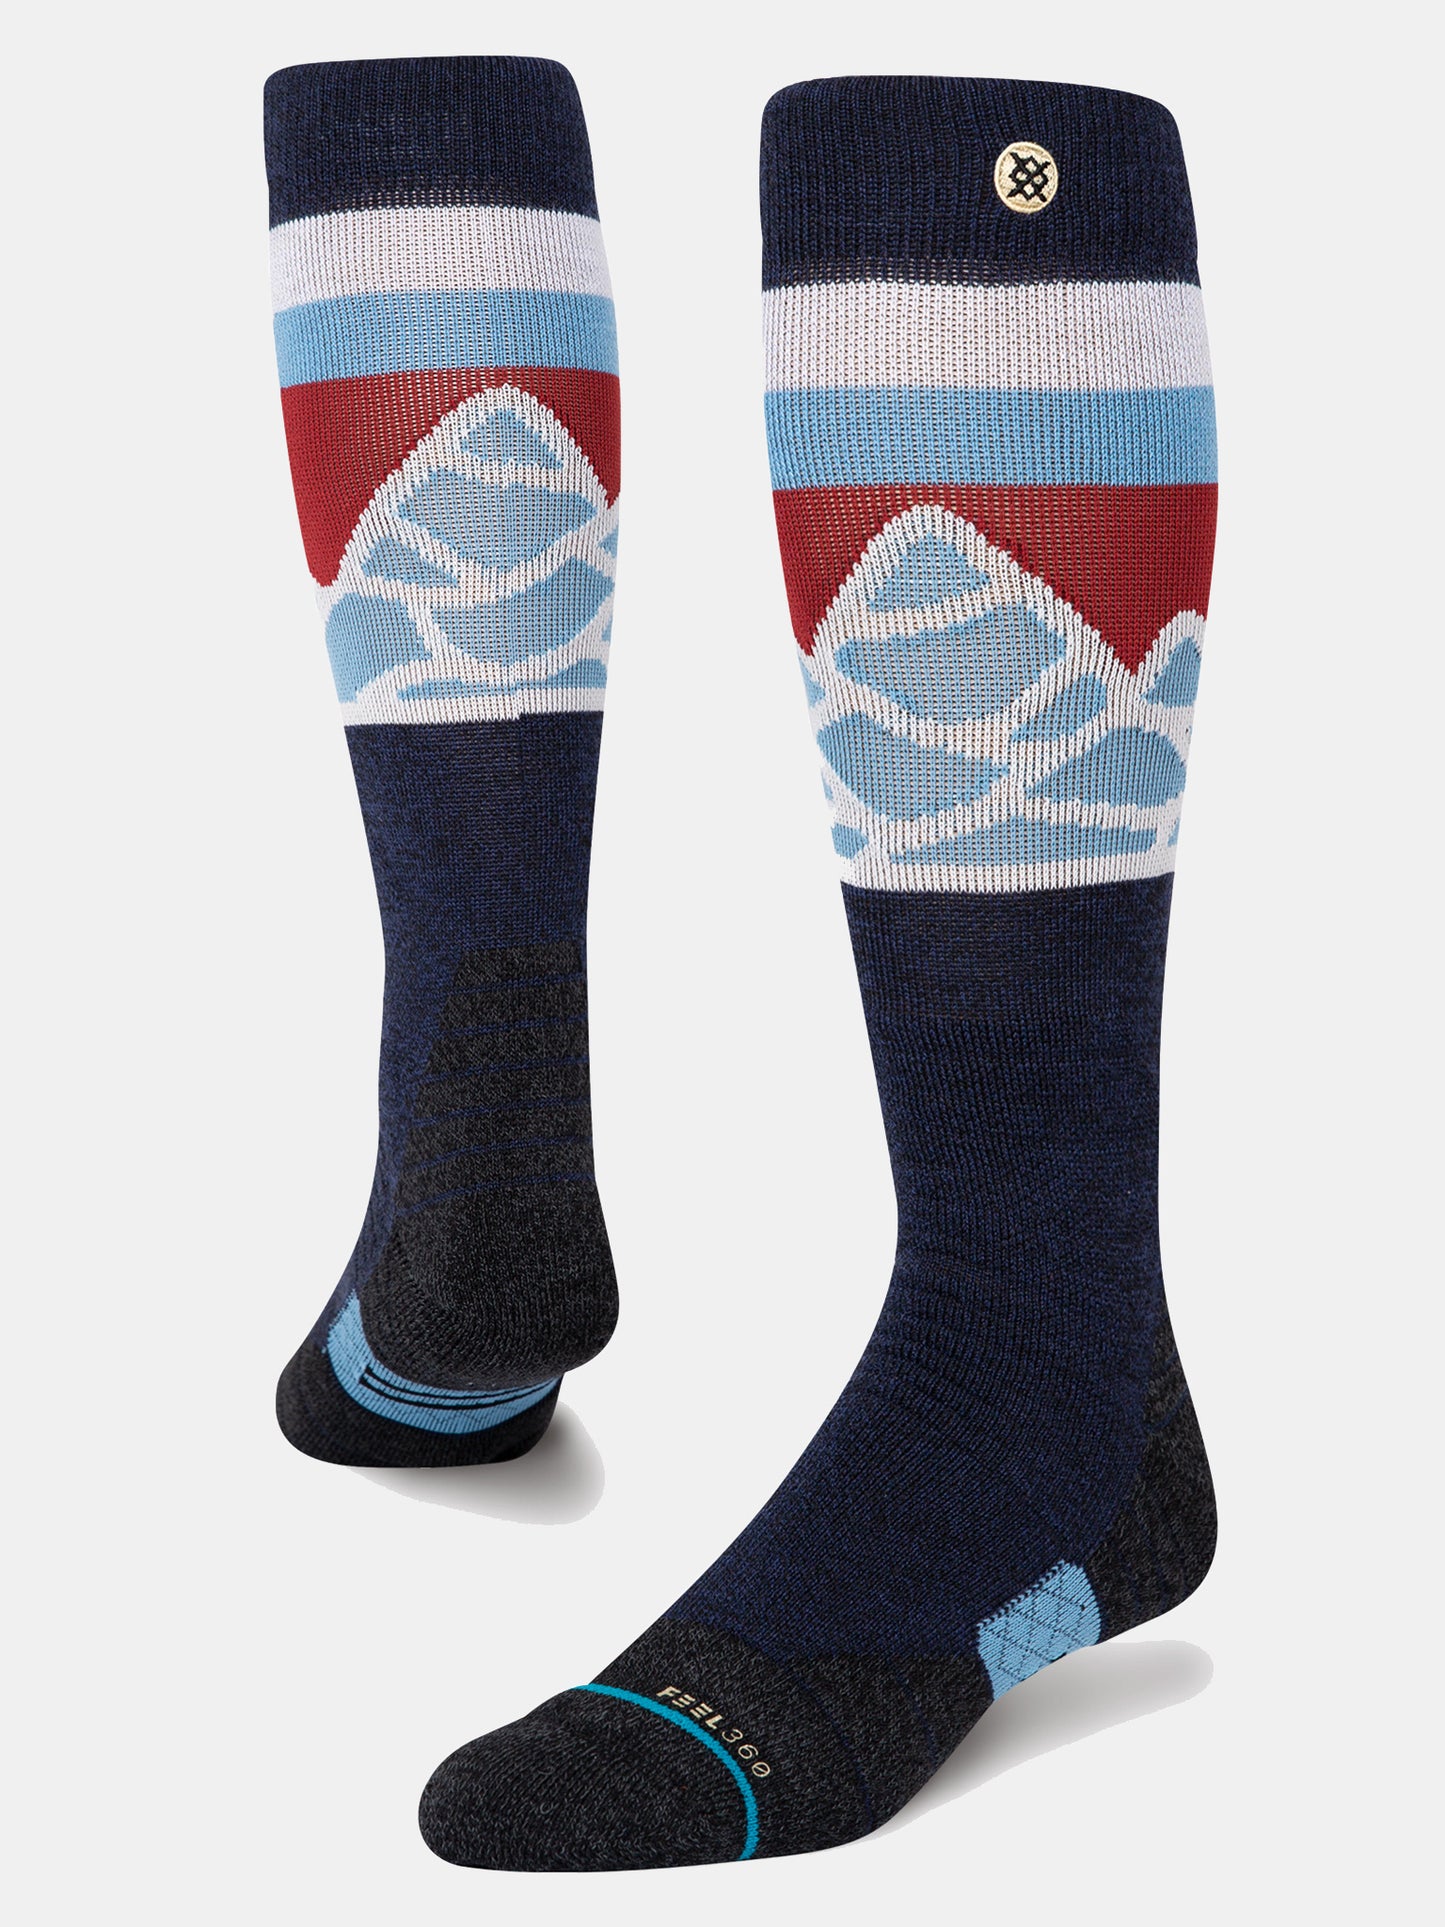 Stance Men's OTC Spillway Socks